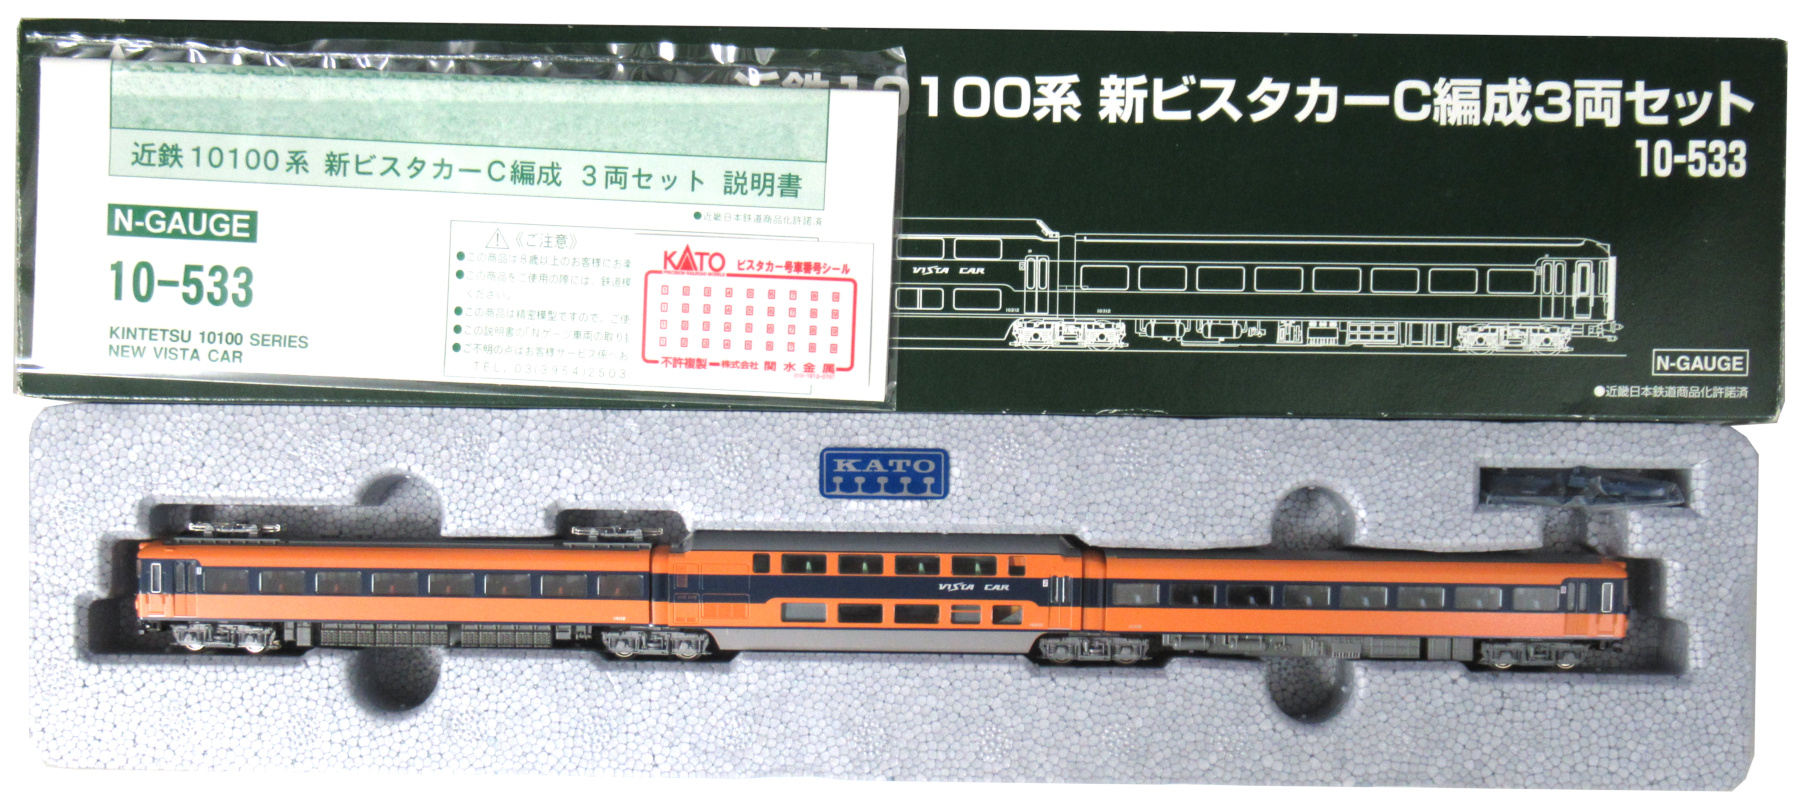 SALE／10%OFF カトー 10-533 近鉄10100系 新ビスタカーC編成3両セット 